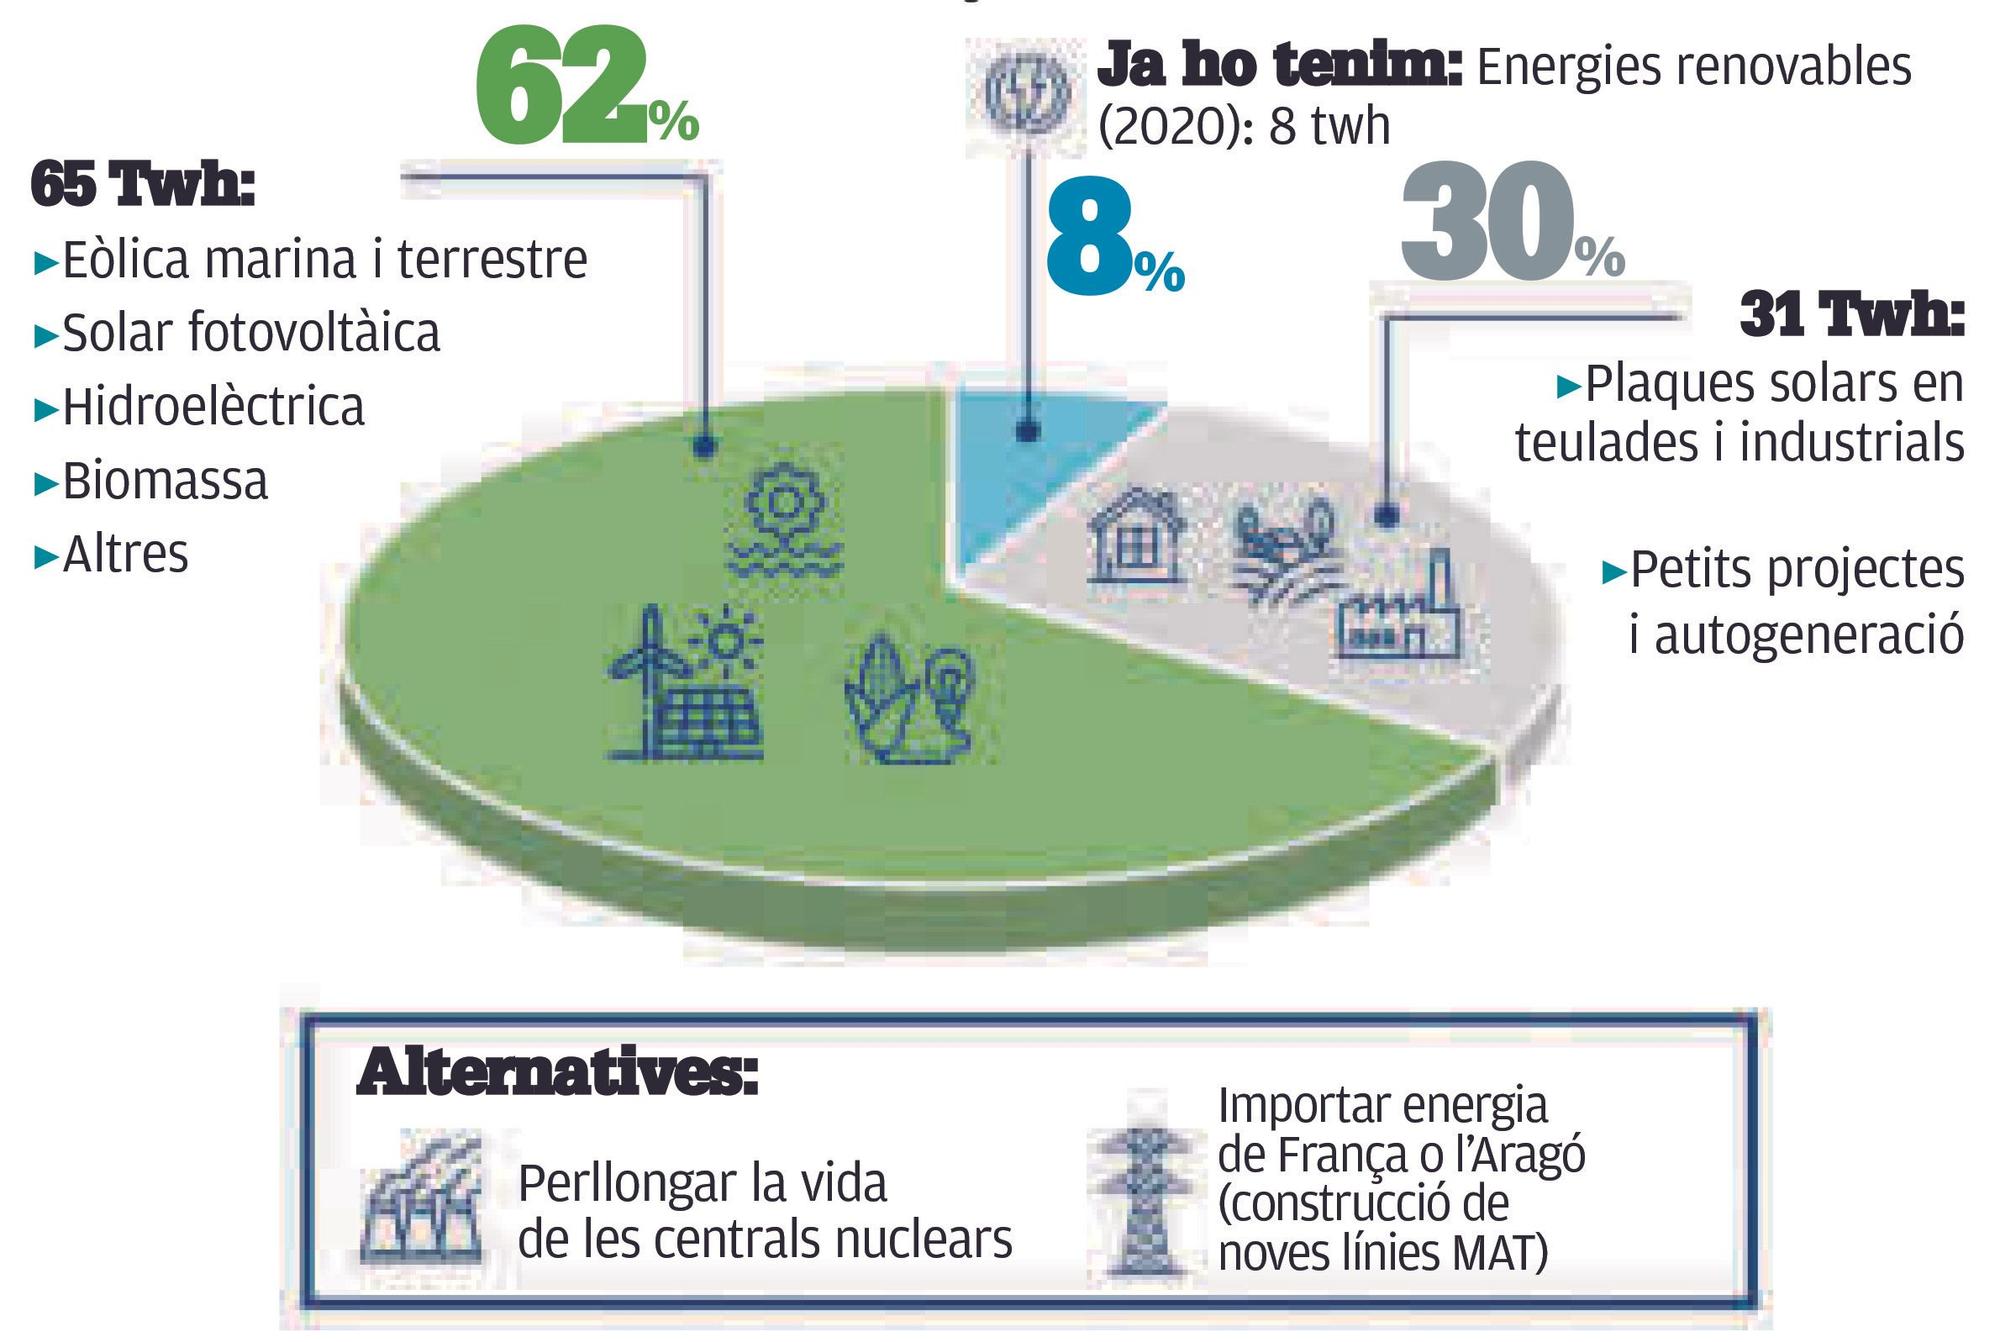 Producció energètica any 2050: 100% renovable - 104 Twh